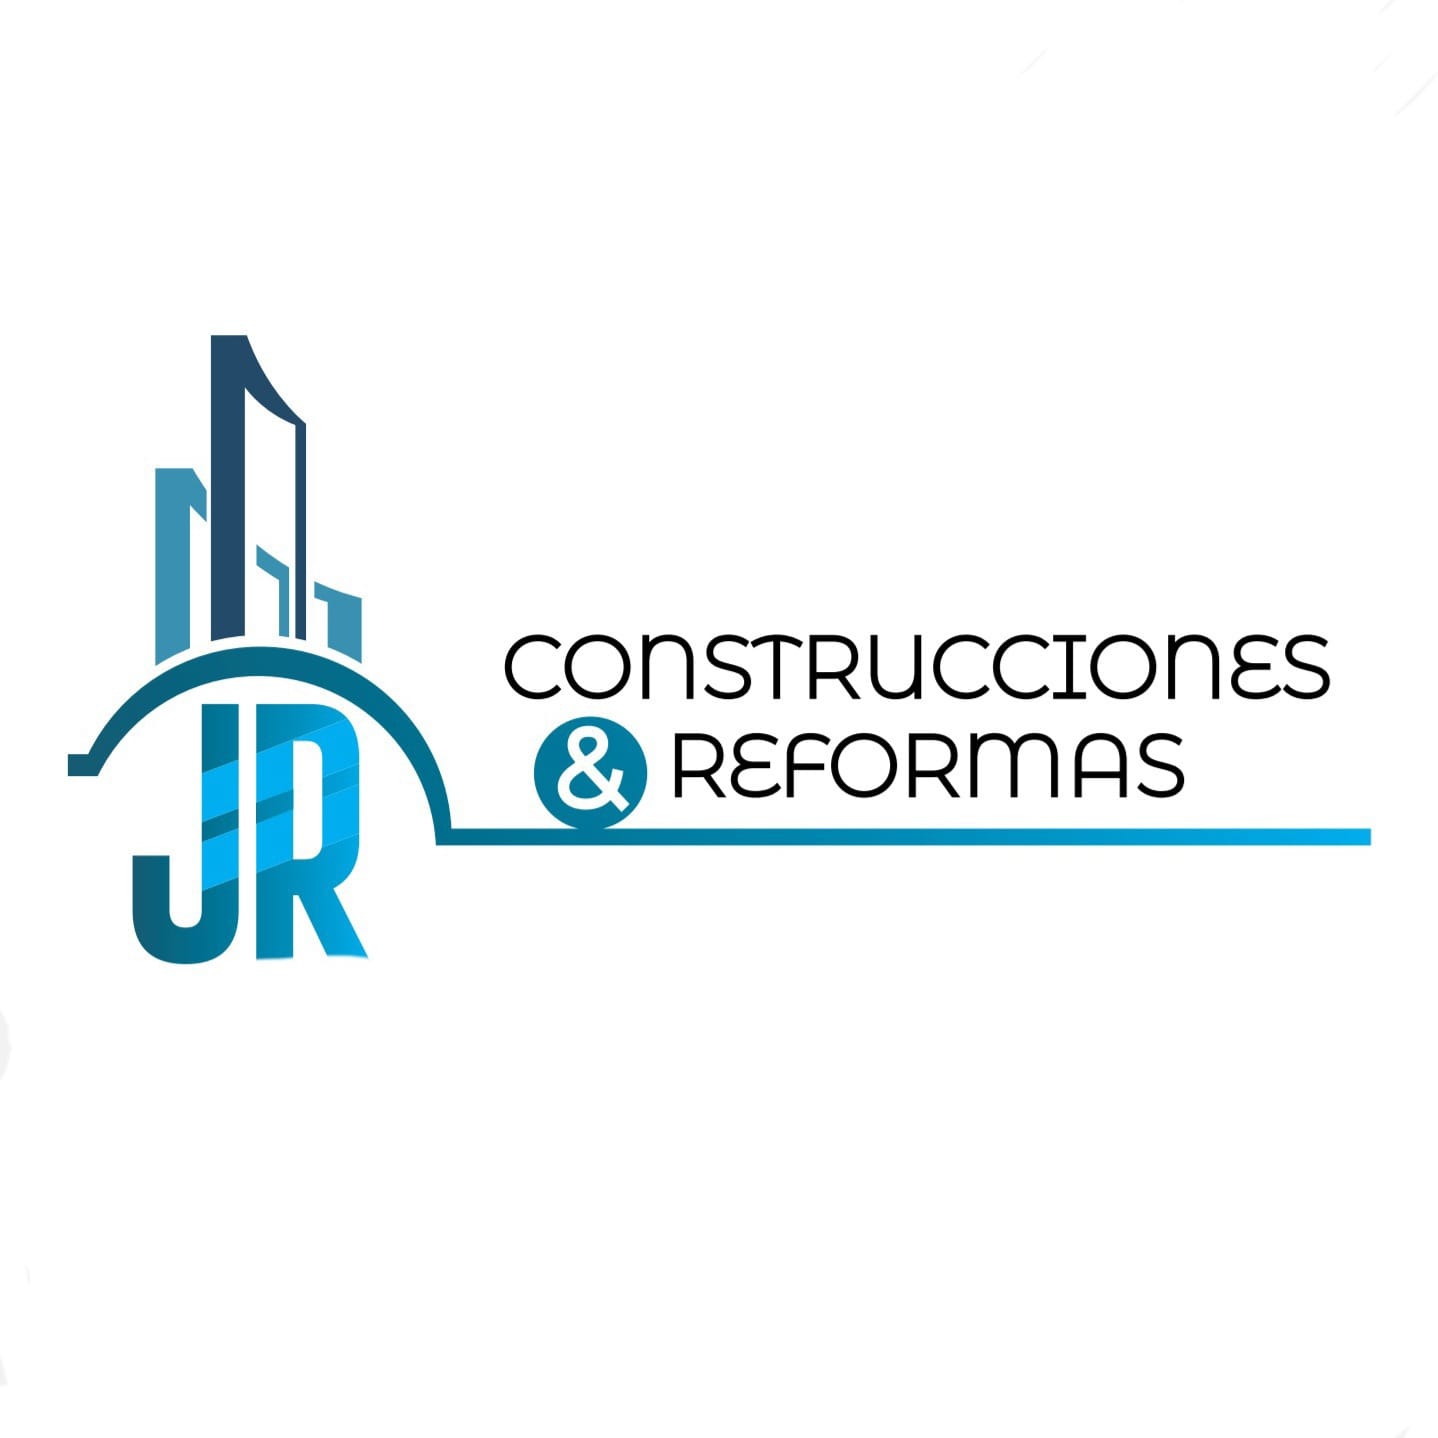 Construcciones & Reformas JR Bilbao